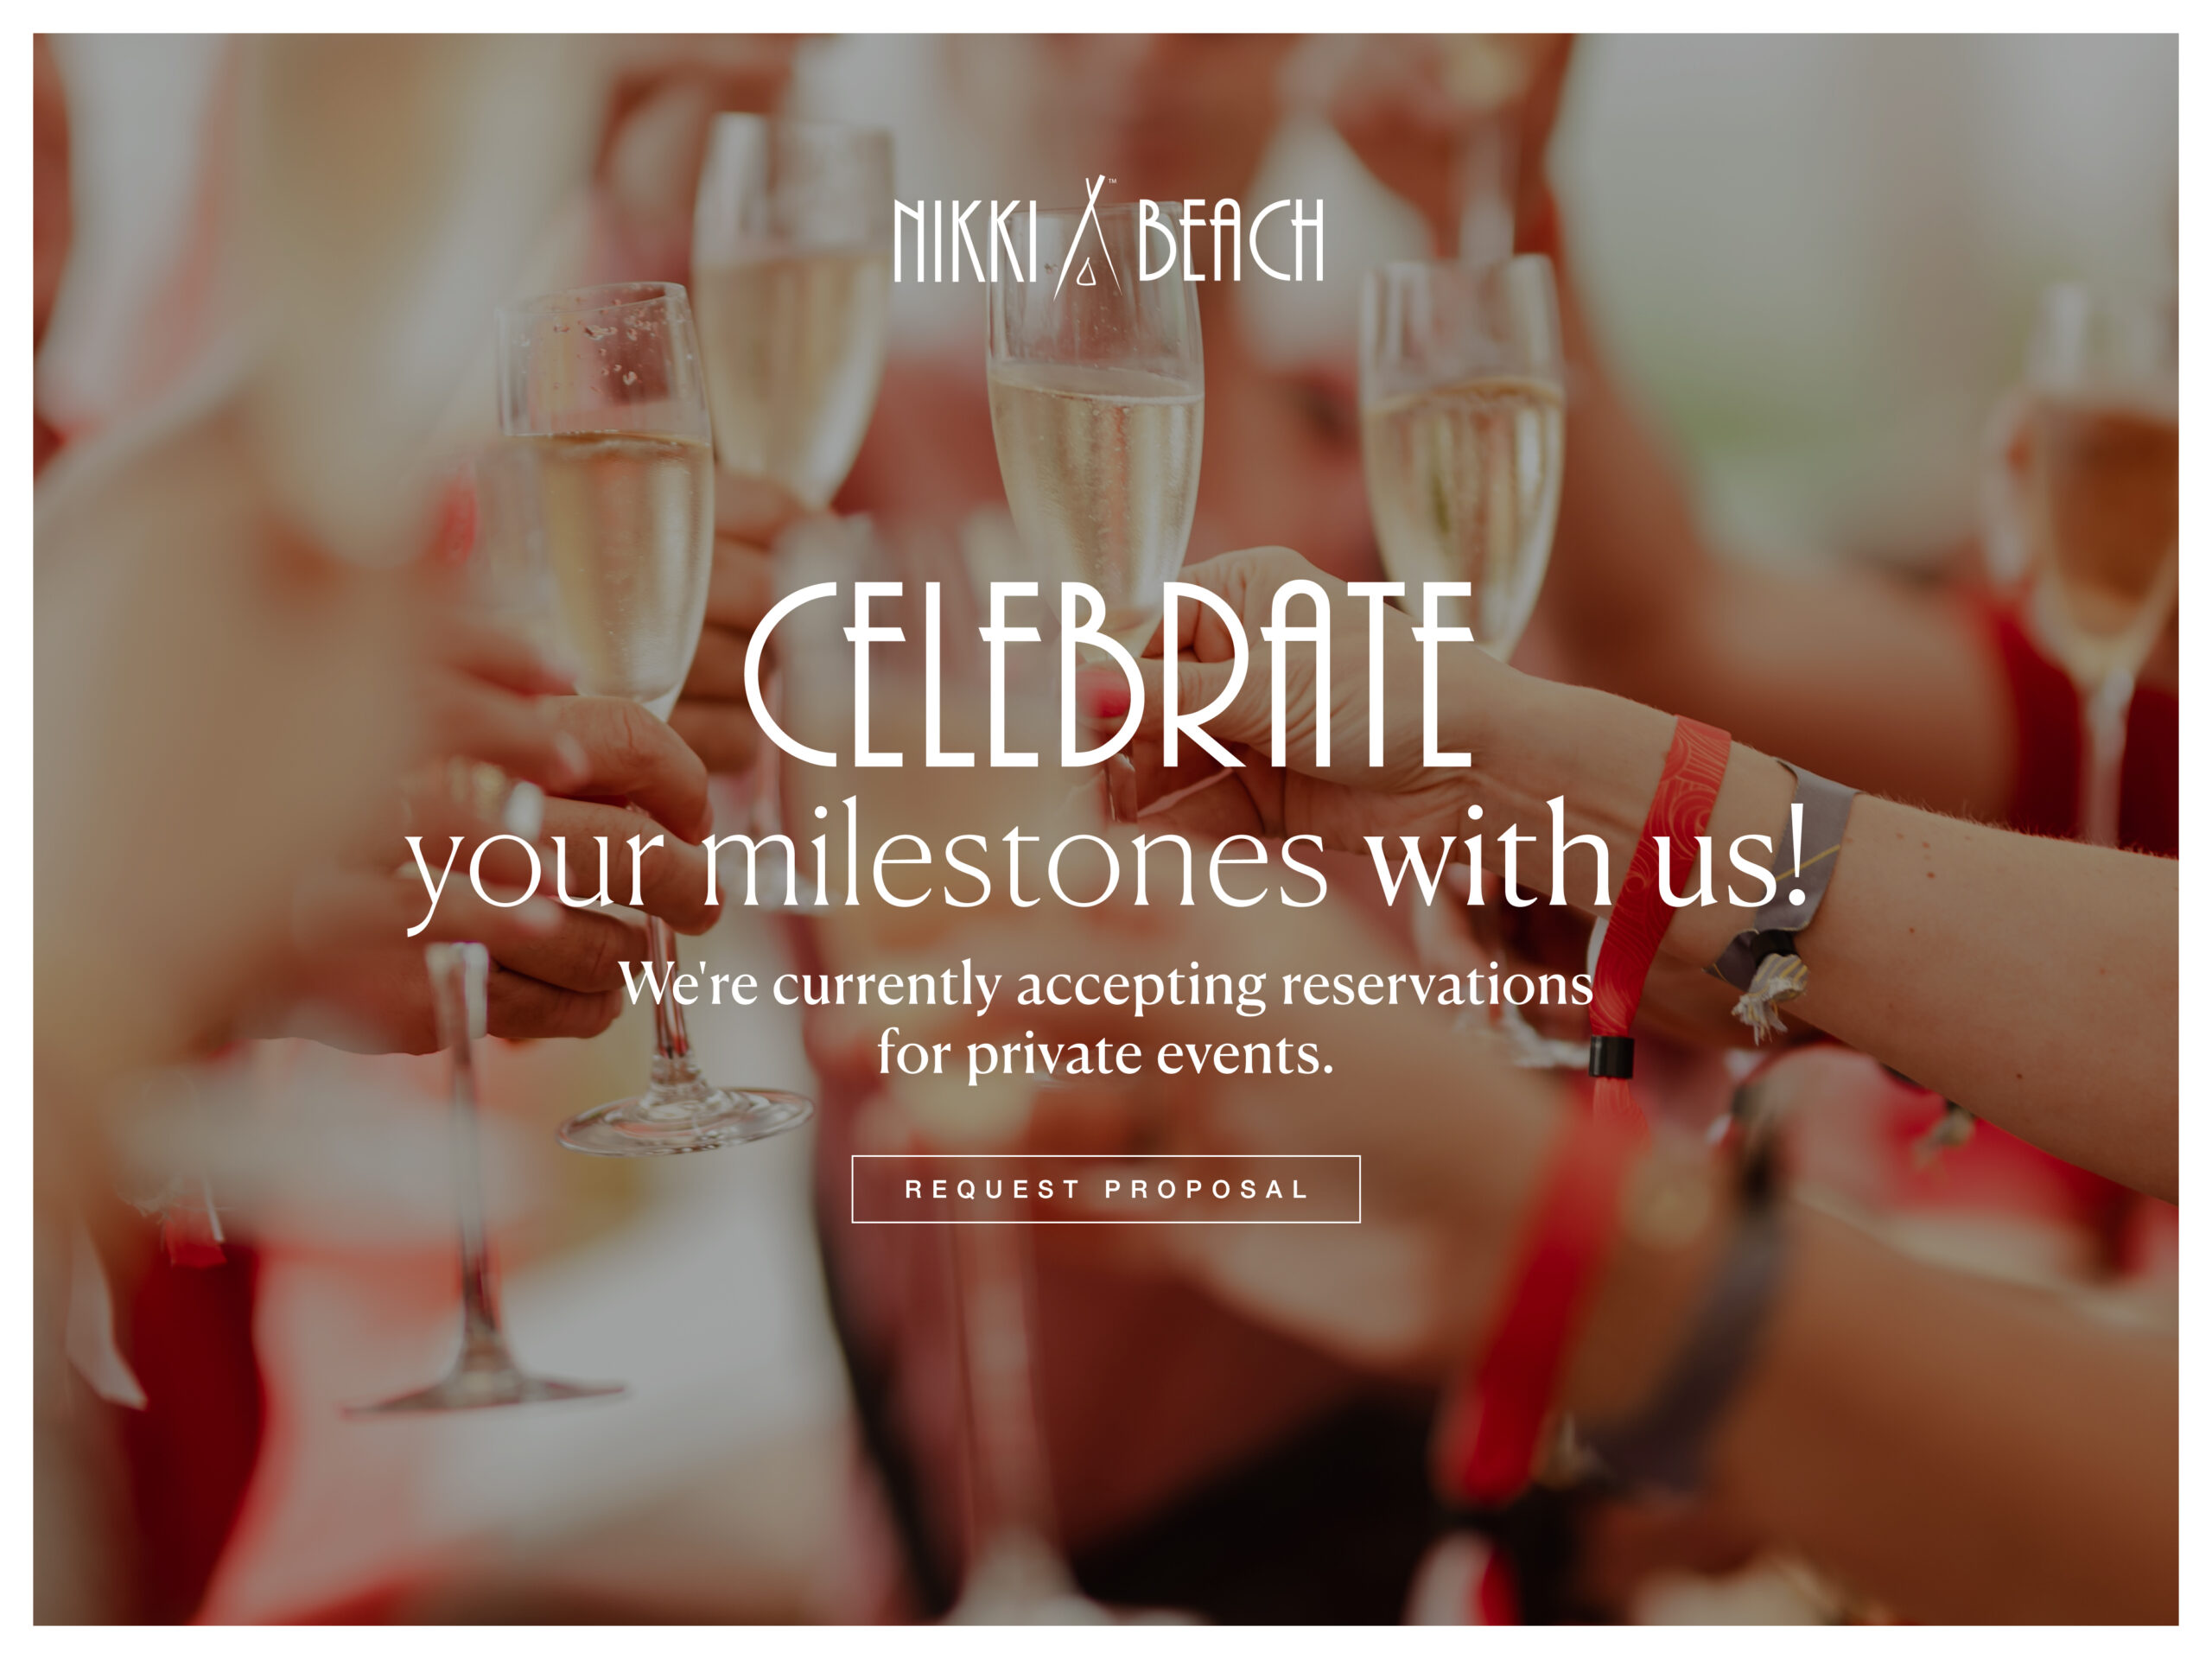 Celebrate your milestones with us